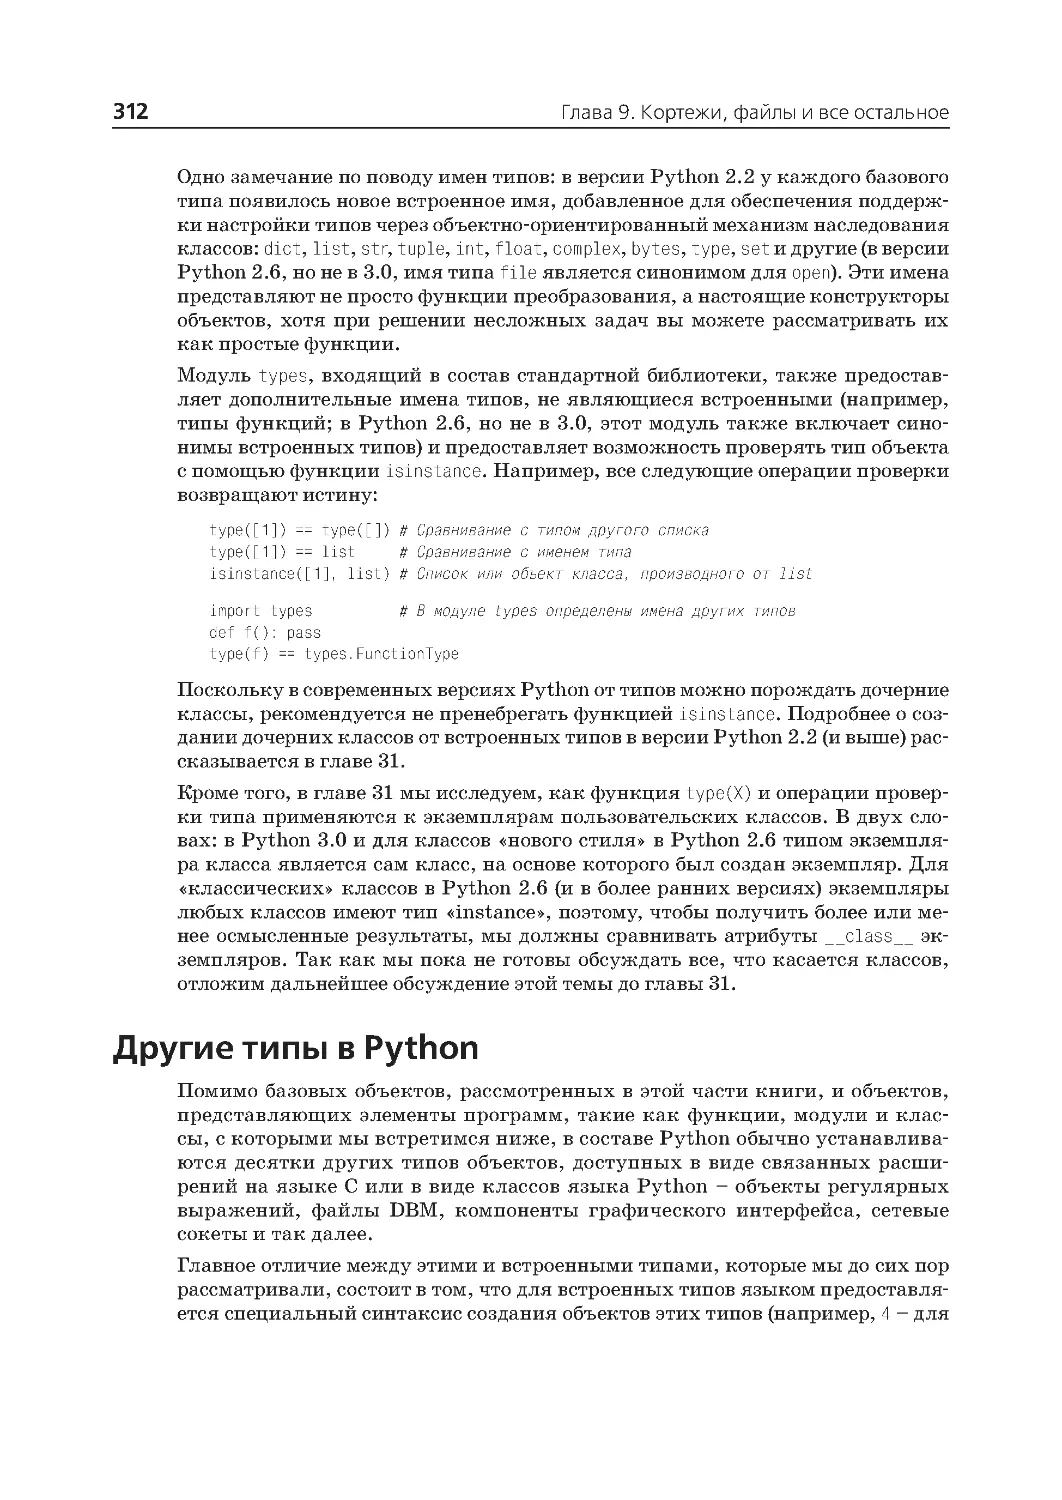 Другие типы в Python